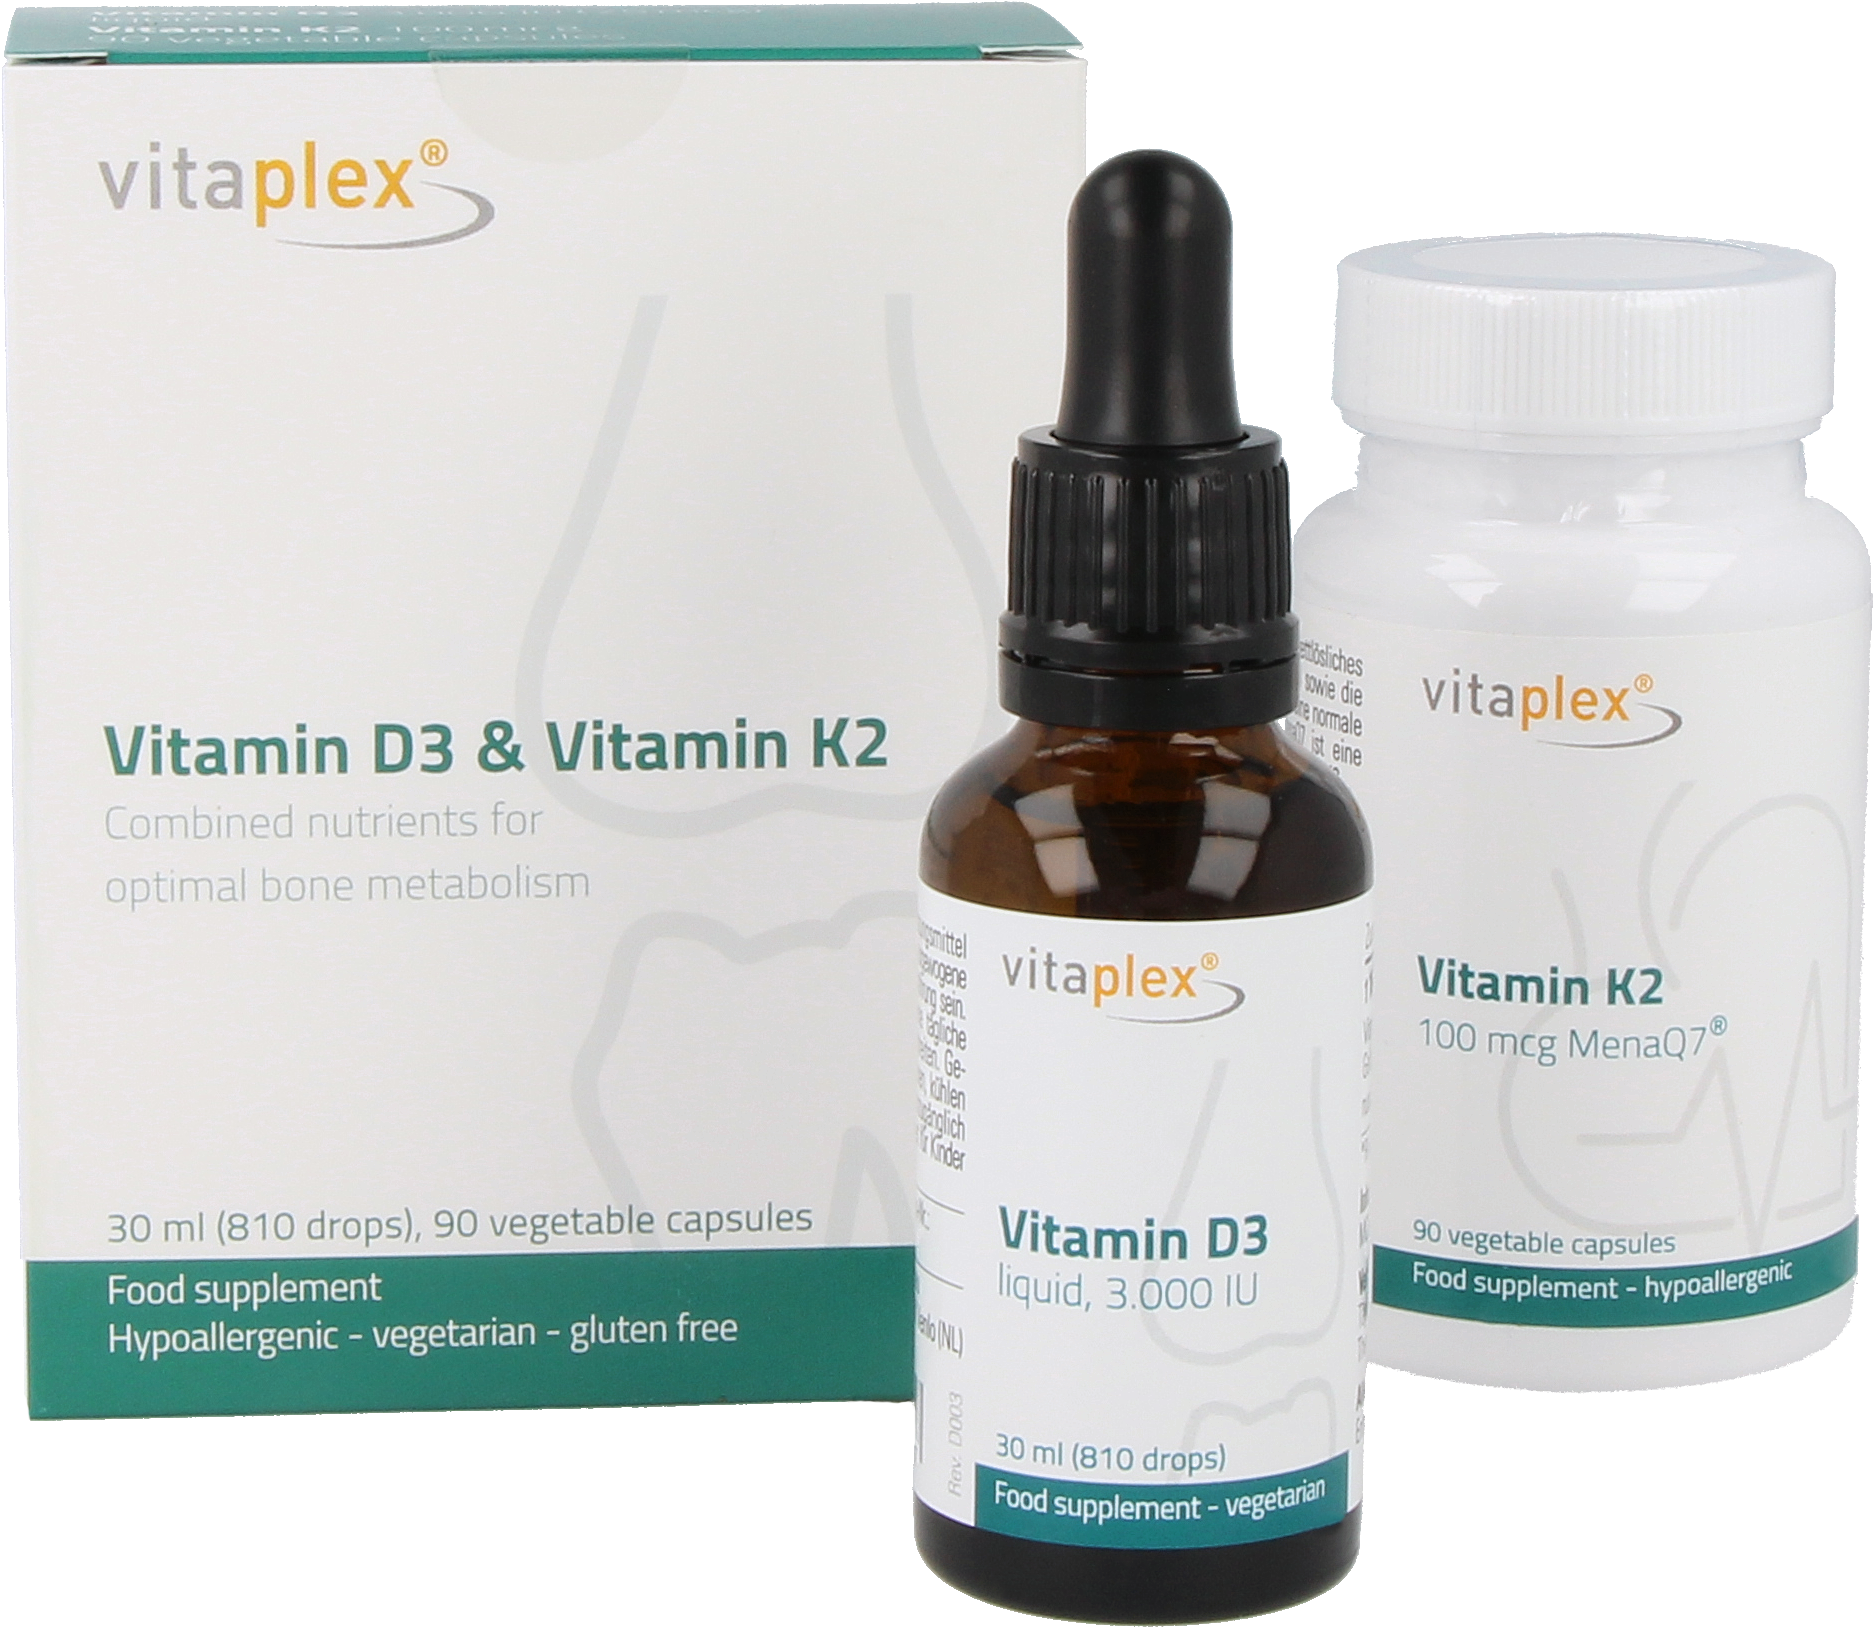 Kombinationsangebot Vitamin D3 und K2 (3.000 IE D3 + 100 mcg K2)